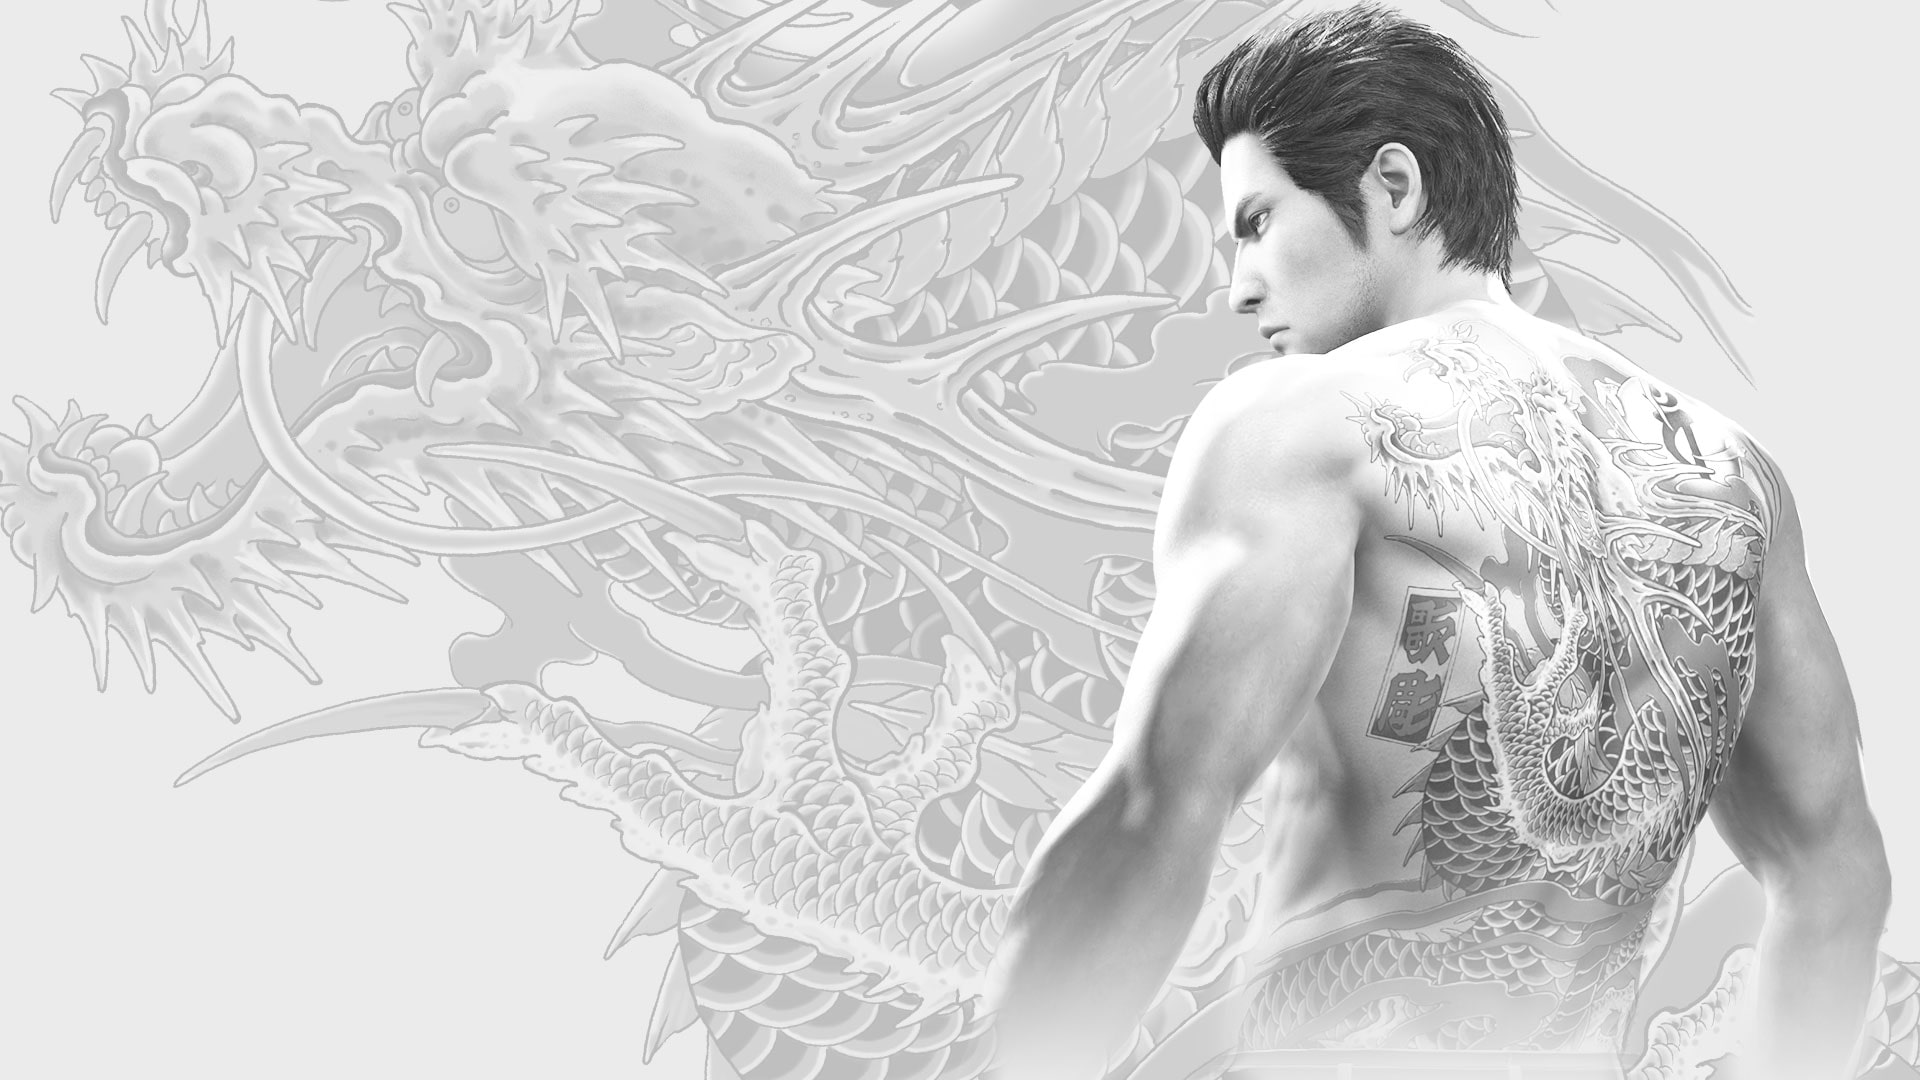 Yakuza 6, Yakuza Kiwami 2 y Fist of the North Star Lost Paradise se unen el  26 de junio al catálogo PlayStation Hits – RegionPlayStation